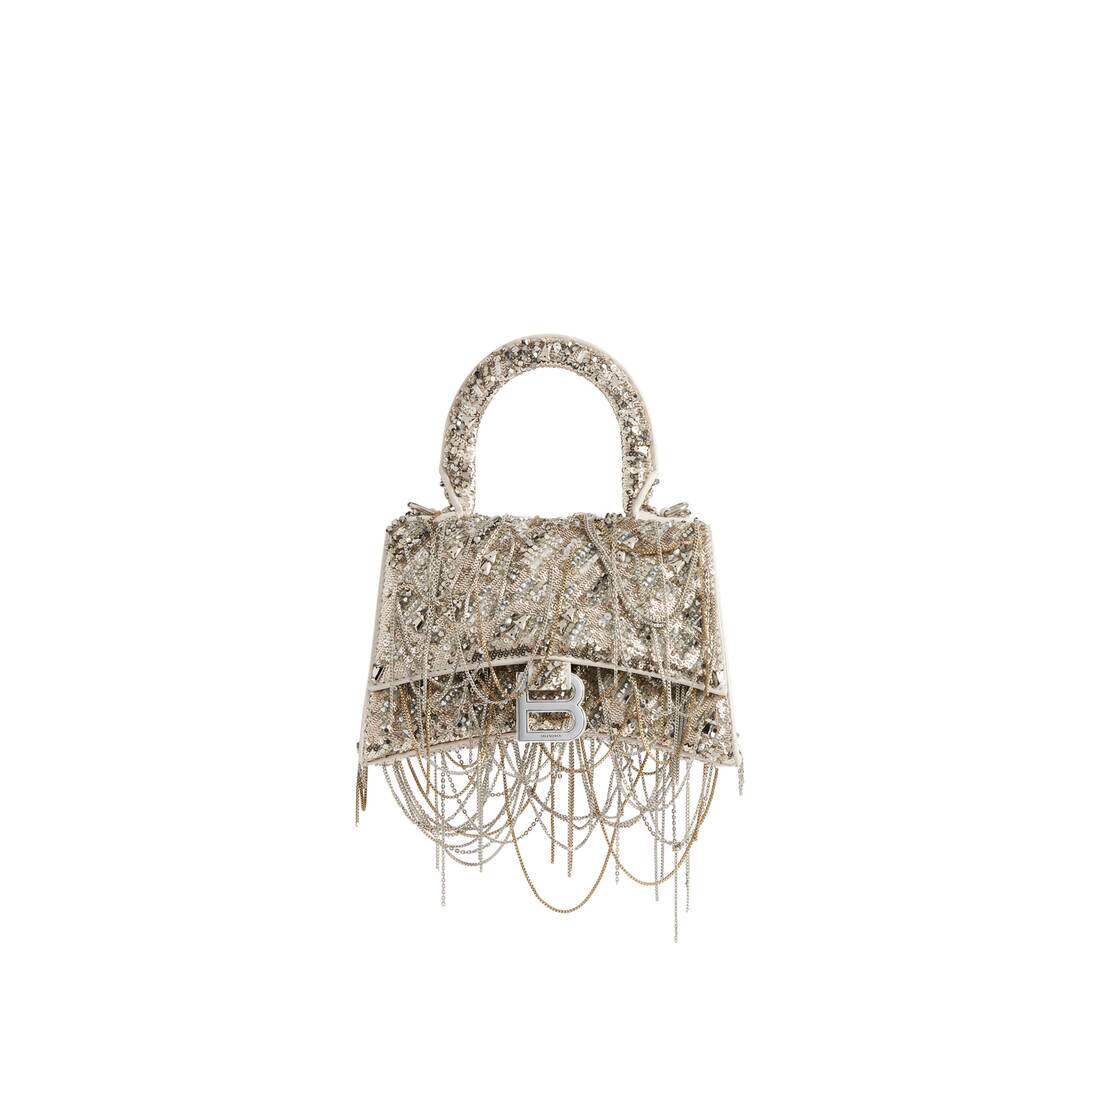 Women's Hourglass Xs Top Handle Mini Bag by Balenciaga